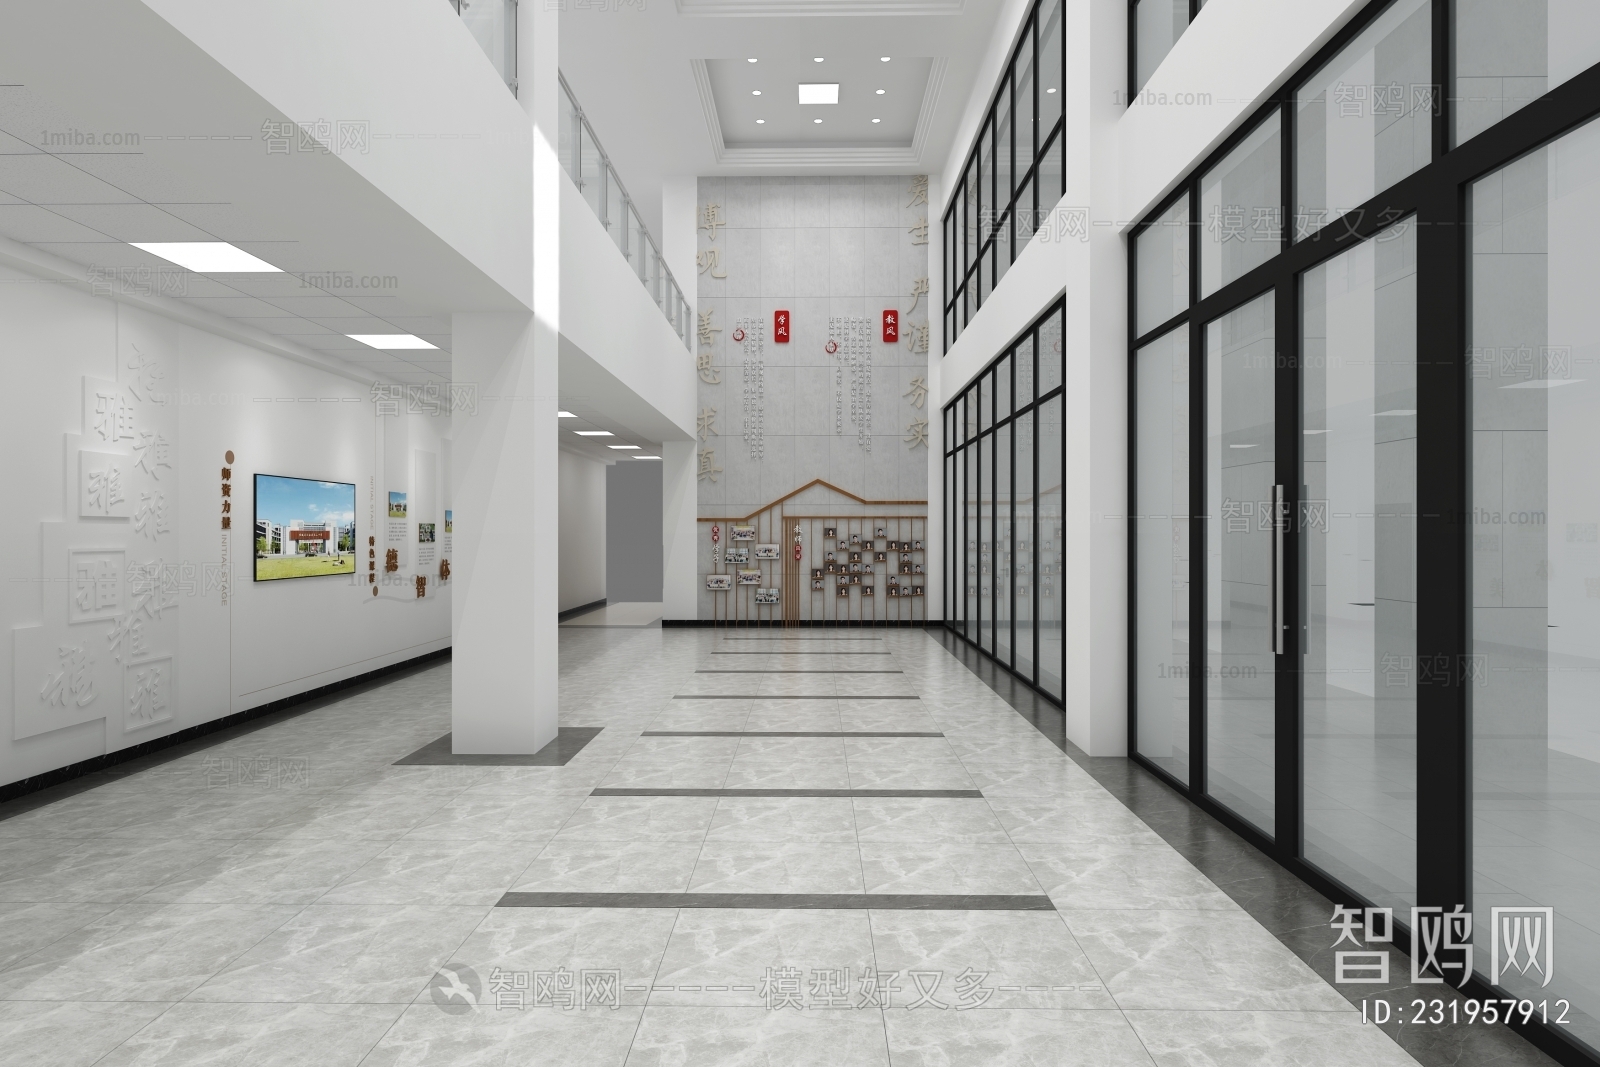 现代新中式学校大厅